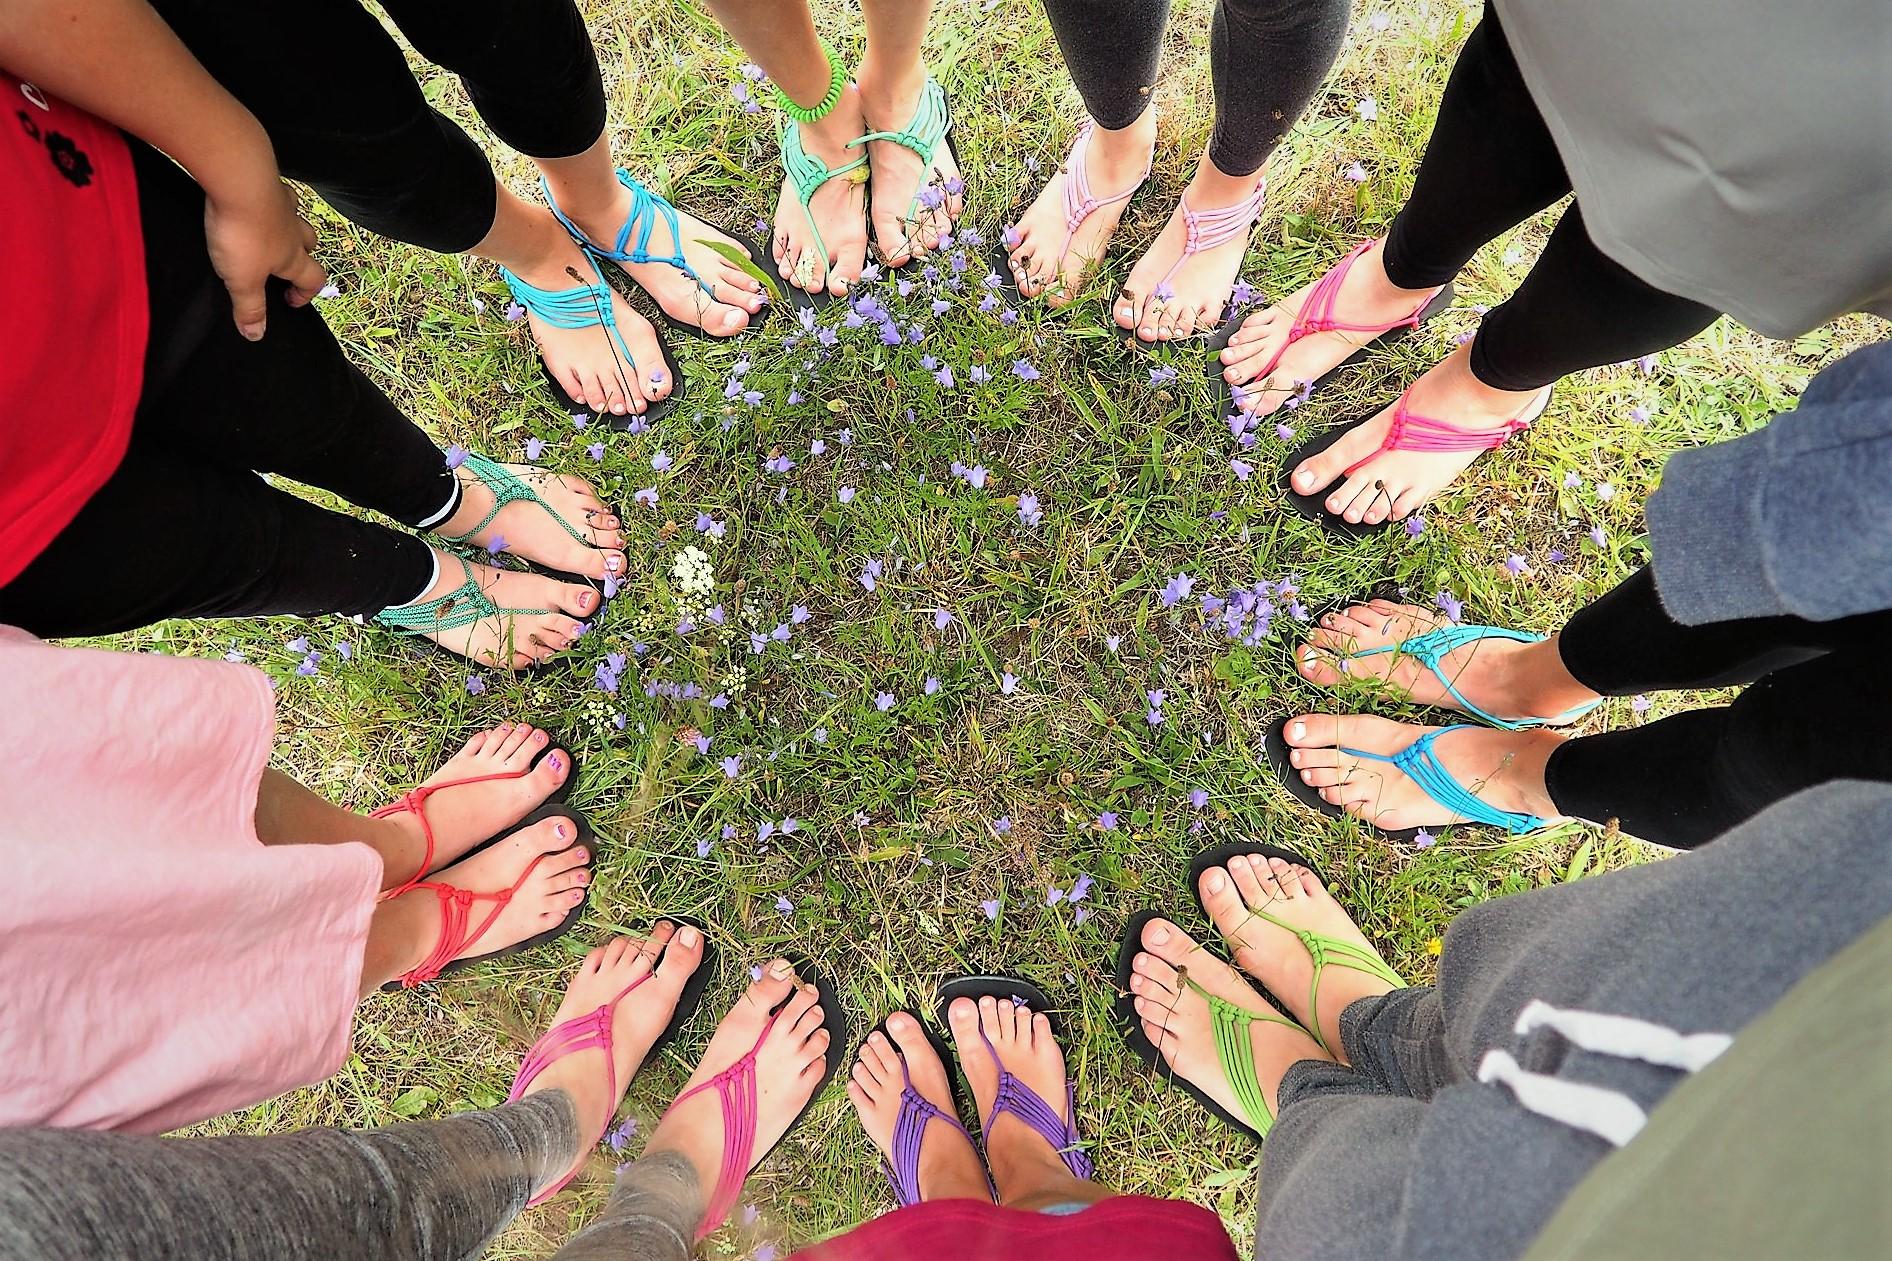 Barefoot sandále (13:00-15:30) - Kreativní den v Lužánkách